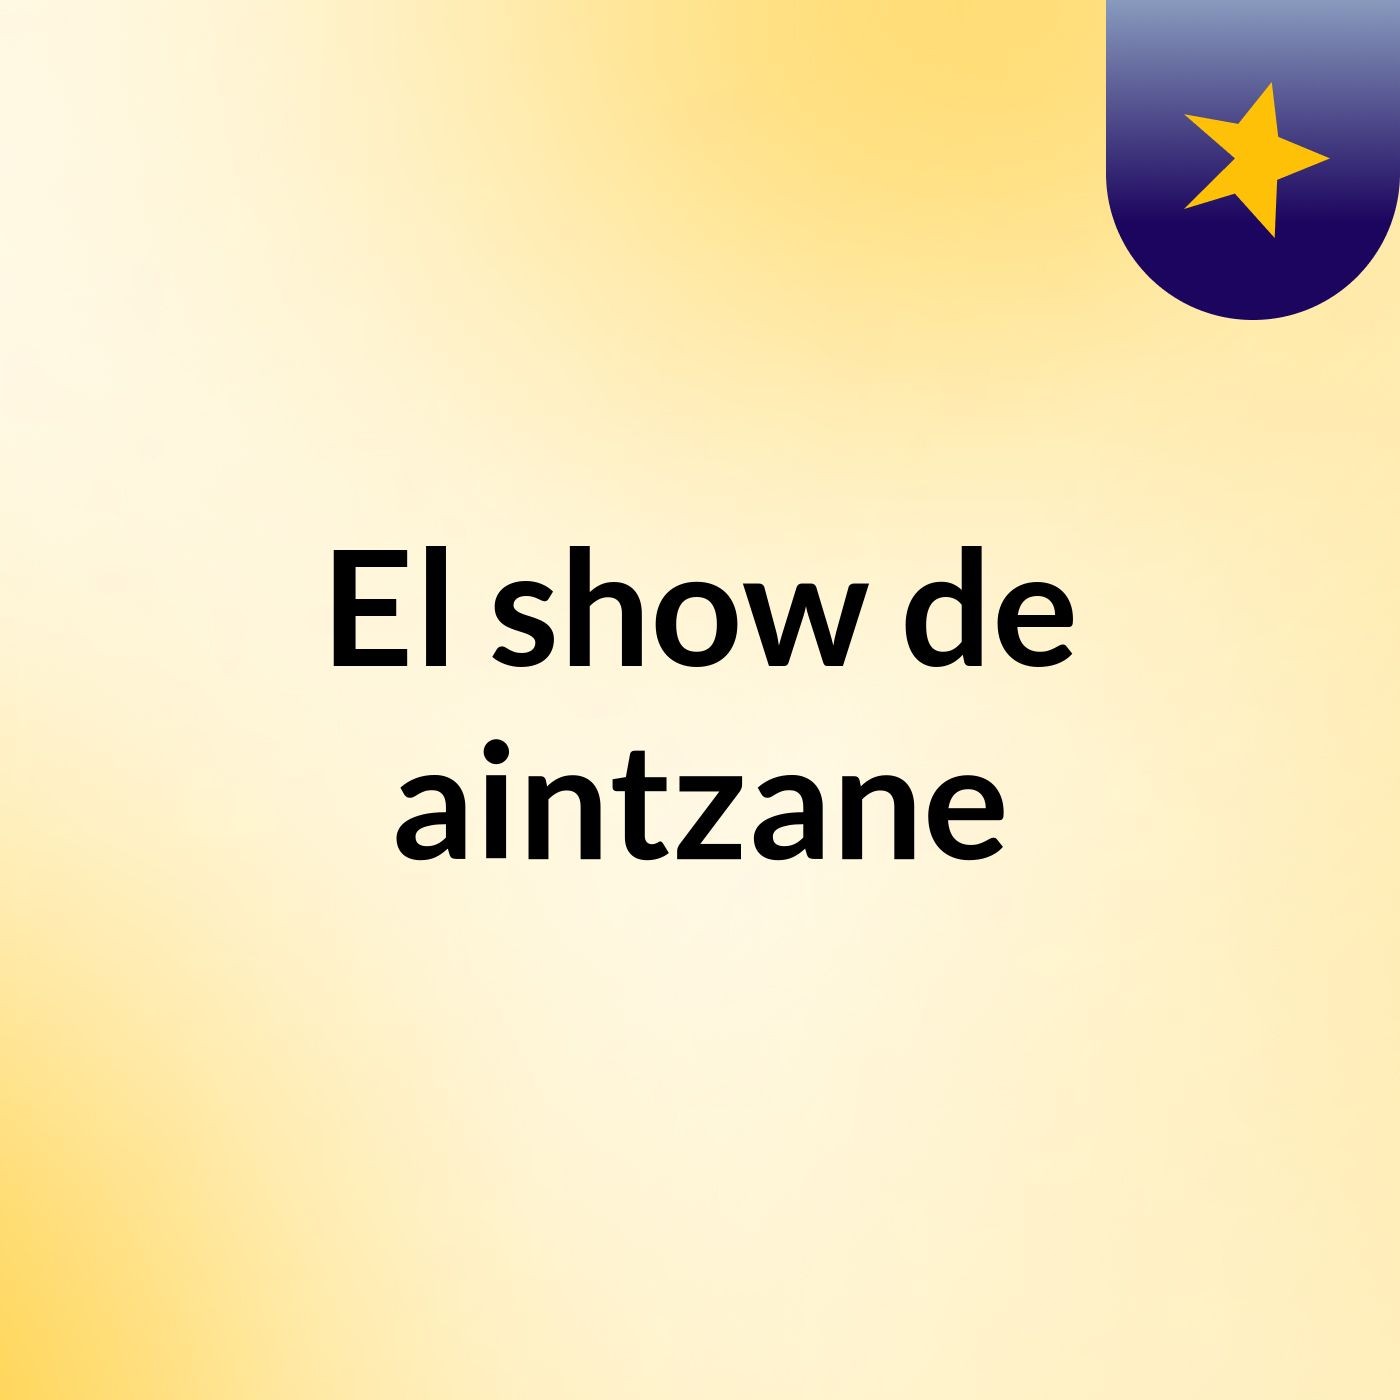 El show de aintzane